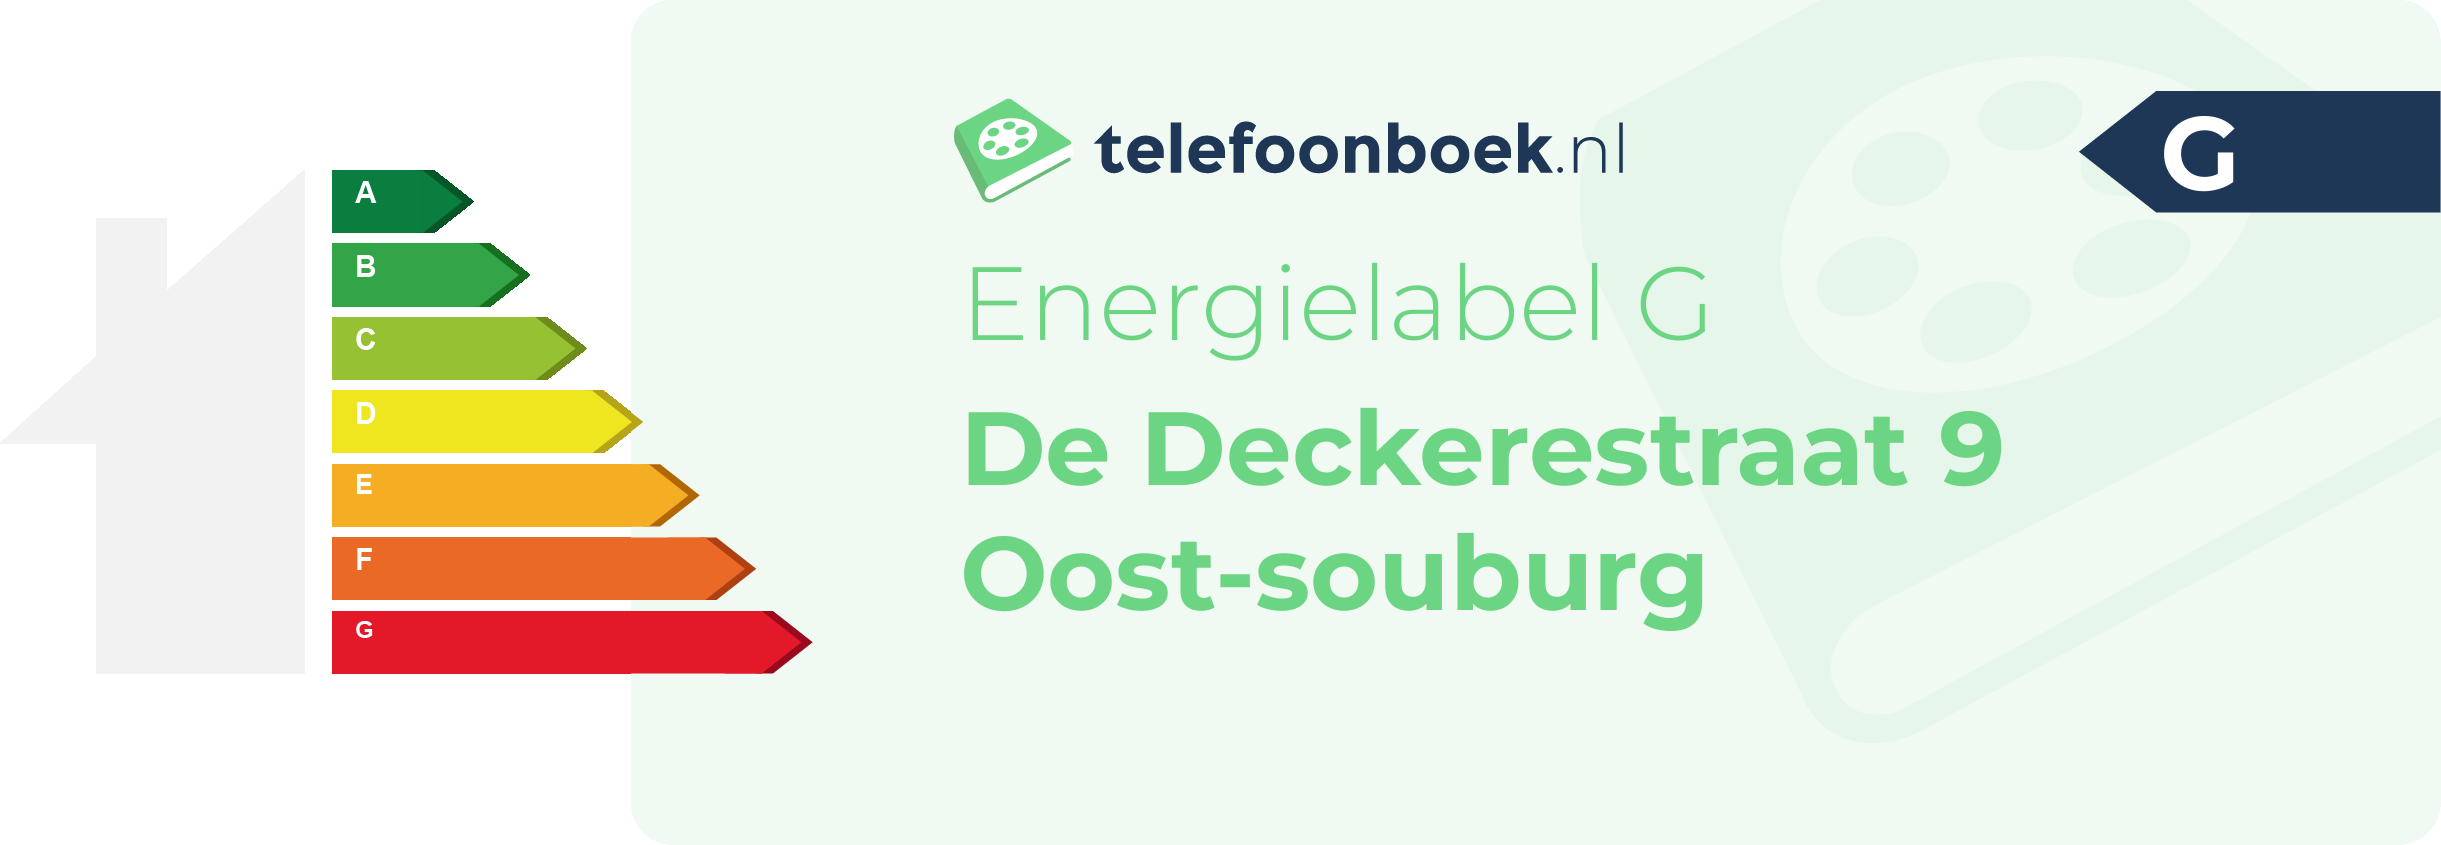 Energielabel De Deckerestraat 9 Oost-Souburg